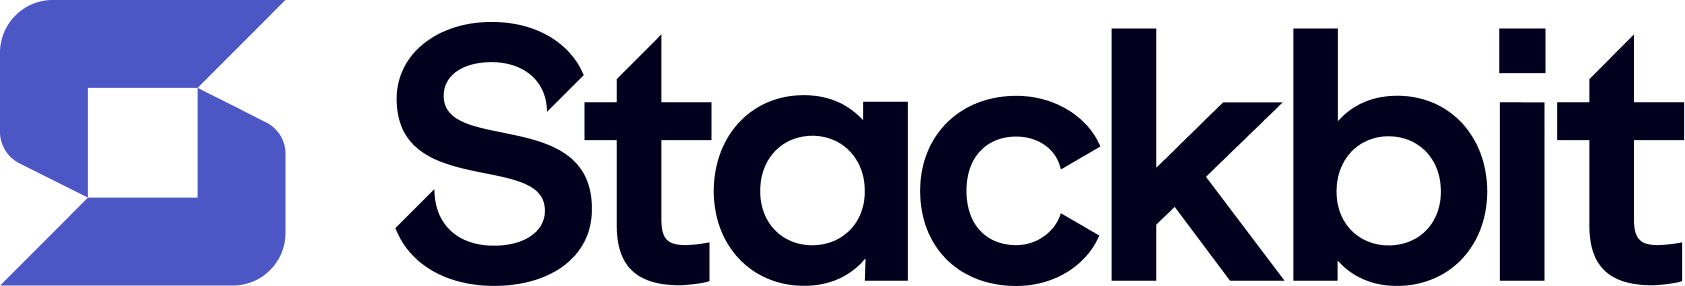 스택빗/ Stackbit Logo